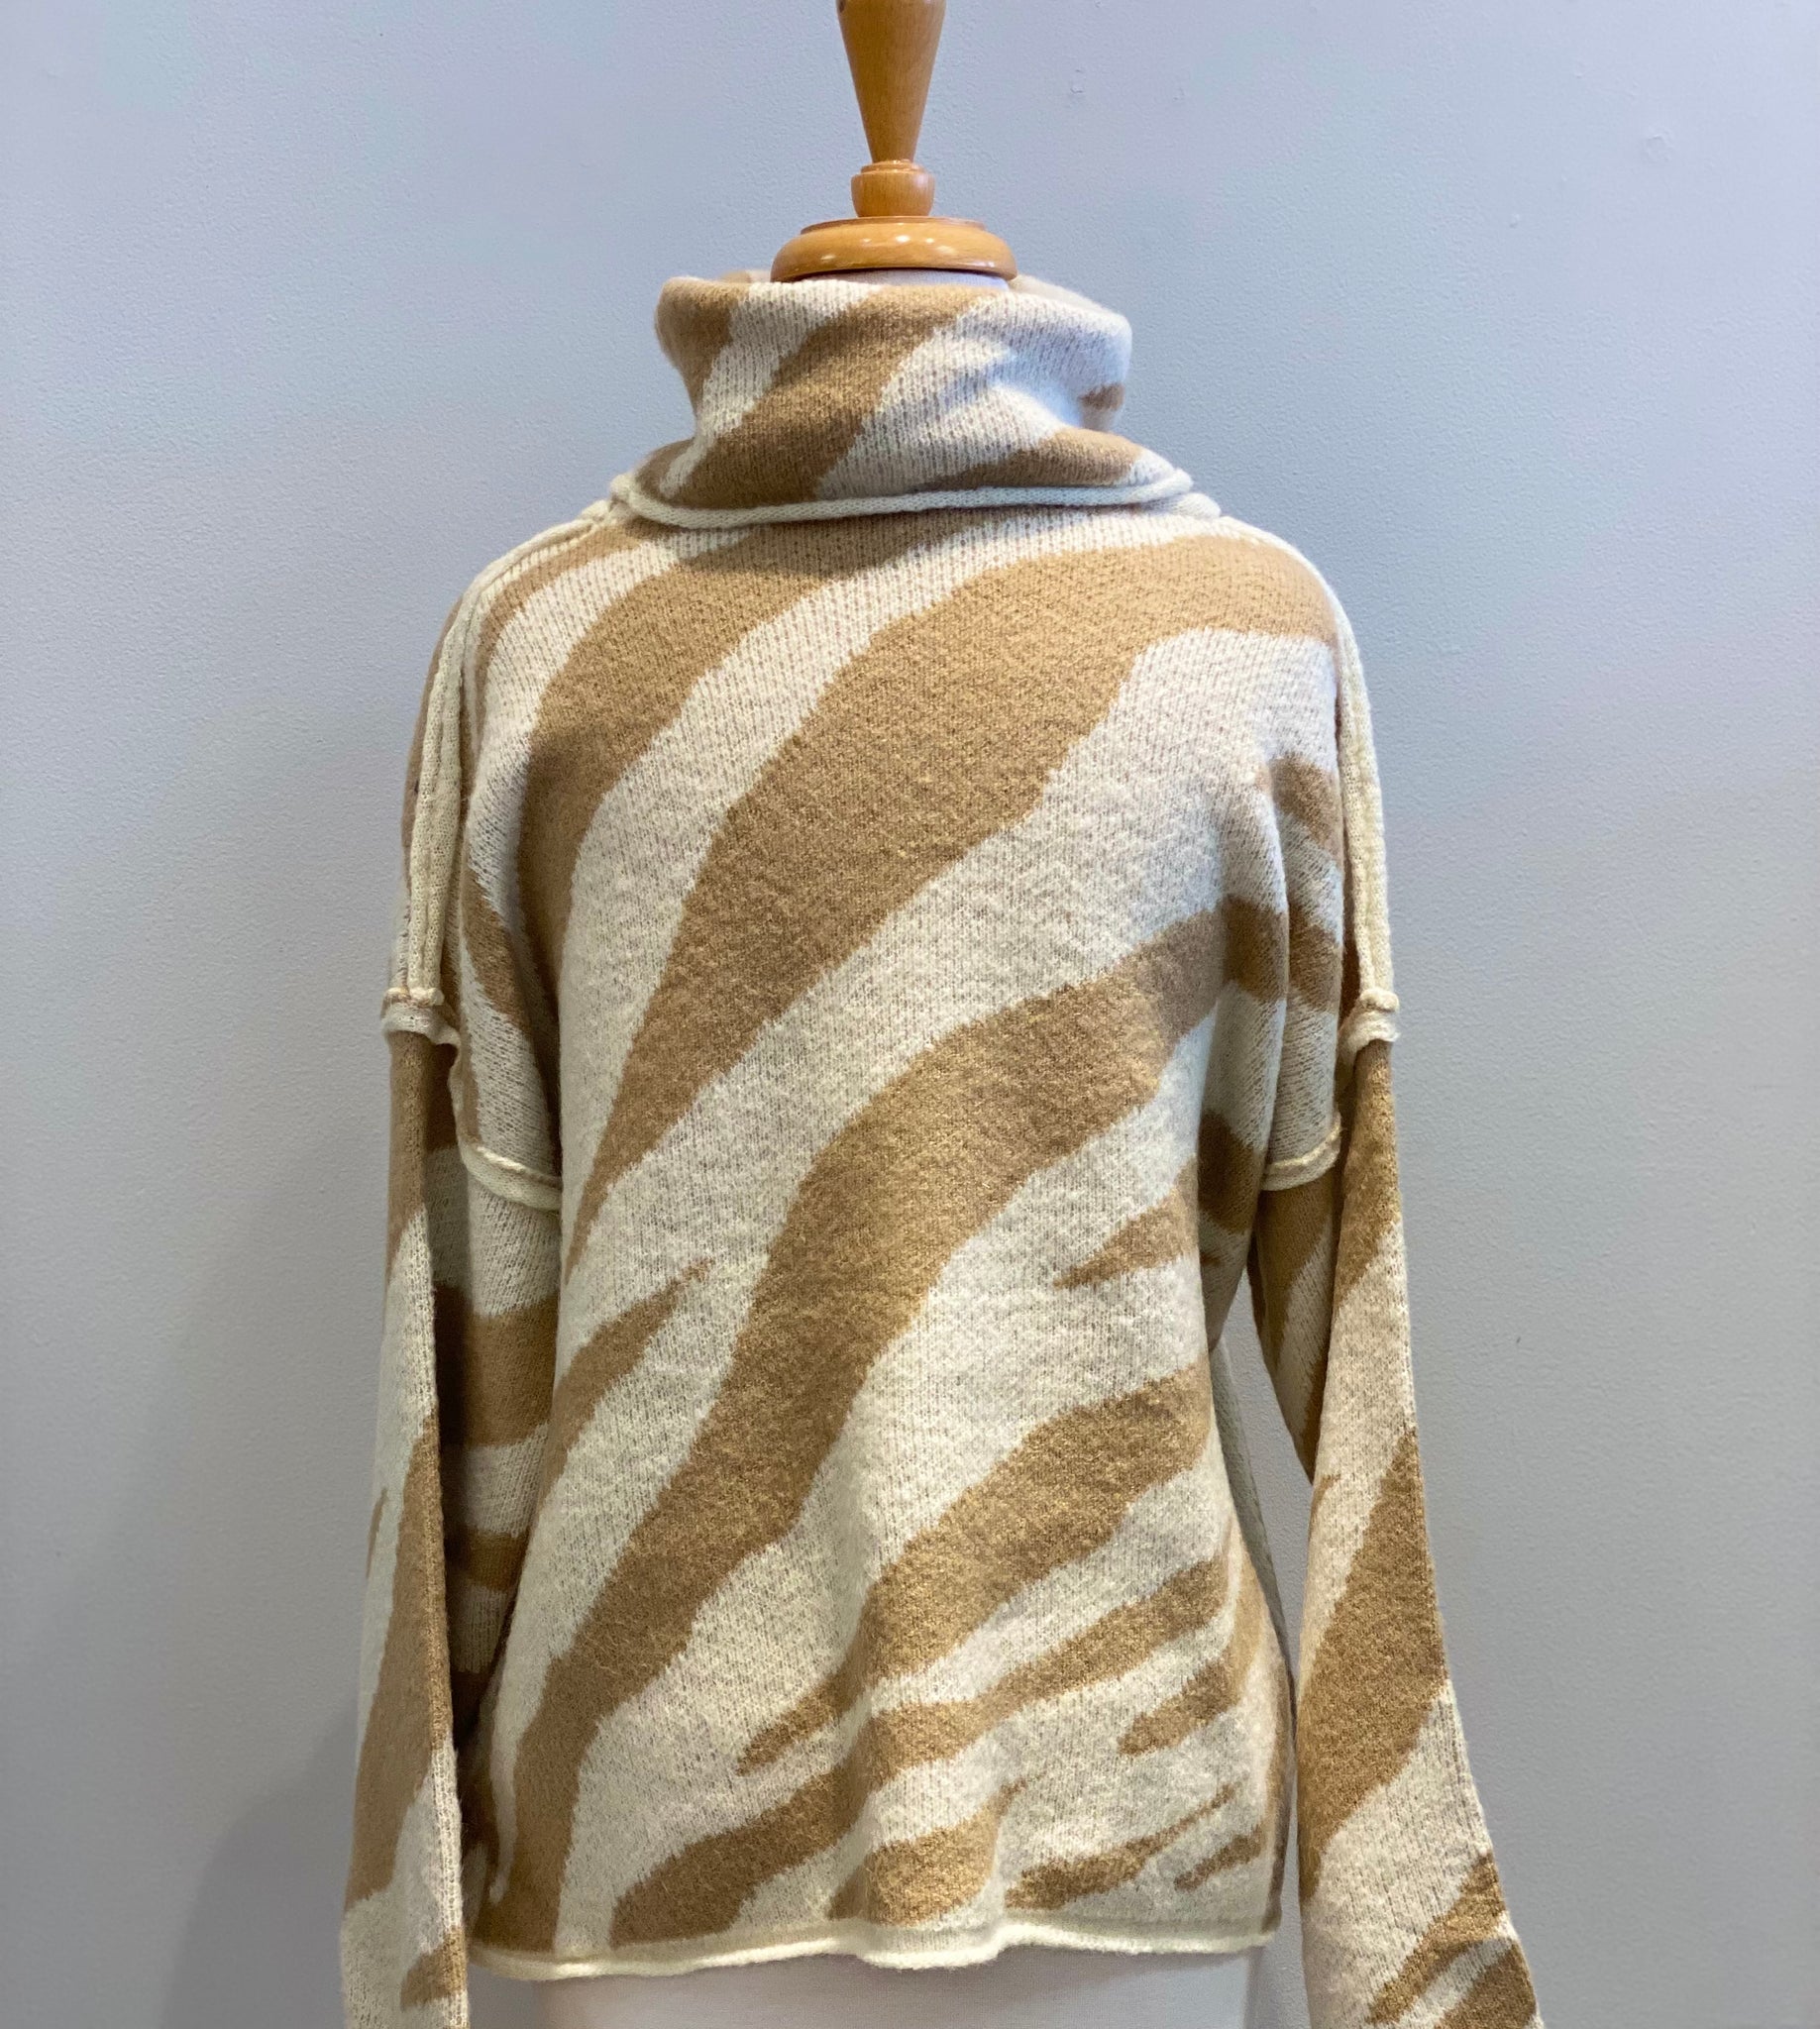 Zebra Stripe Sweater